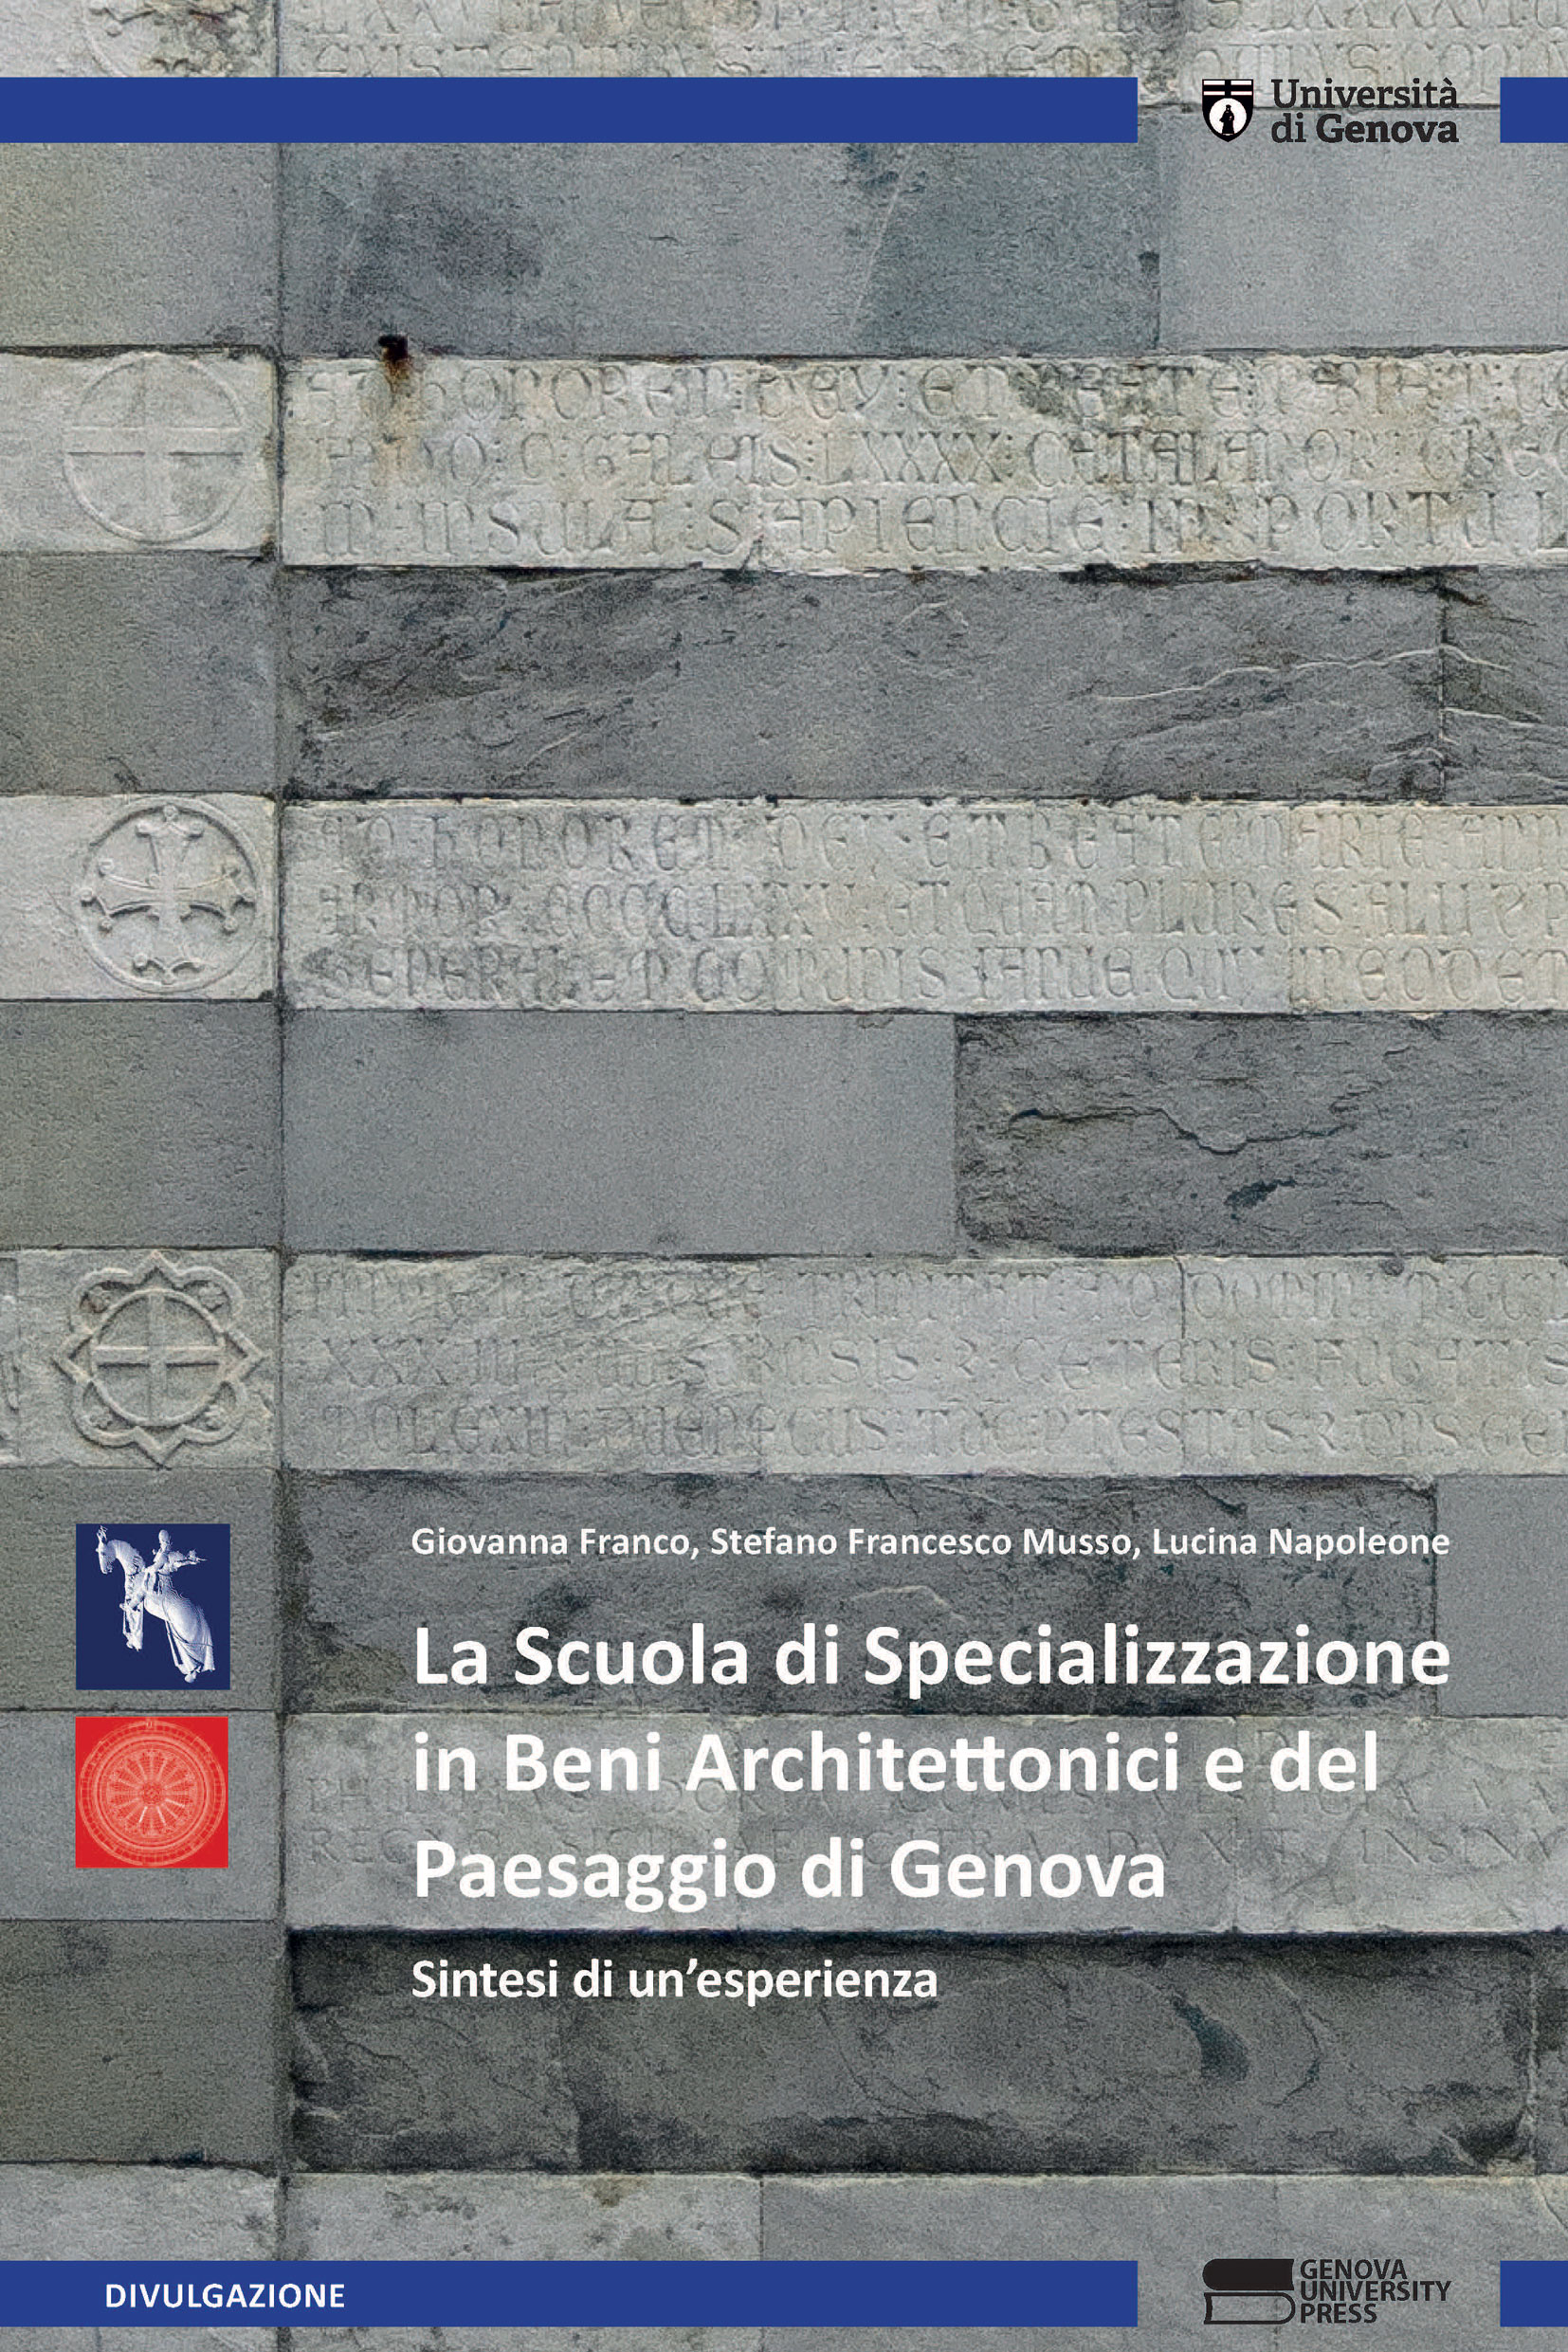 La Scuola di Specializzazione in Beni Architettonici e del Paesaggio di Genova